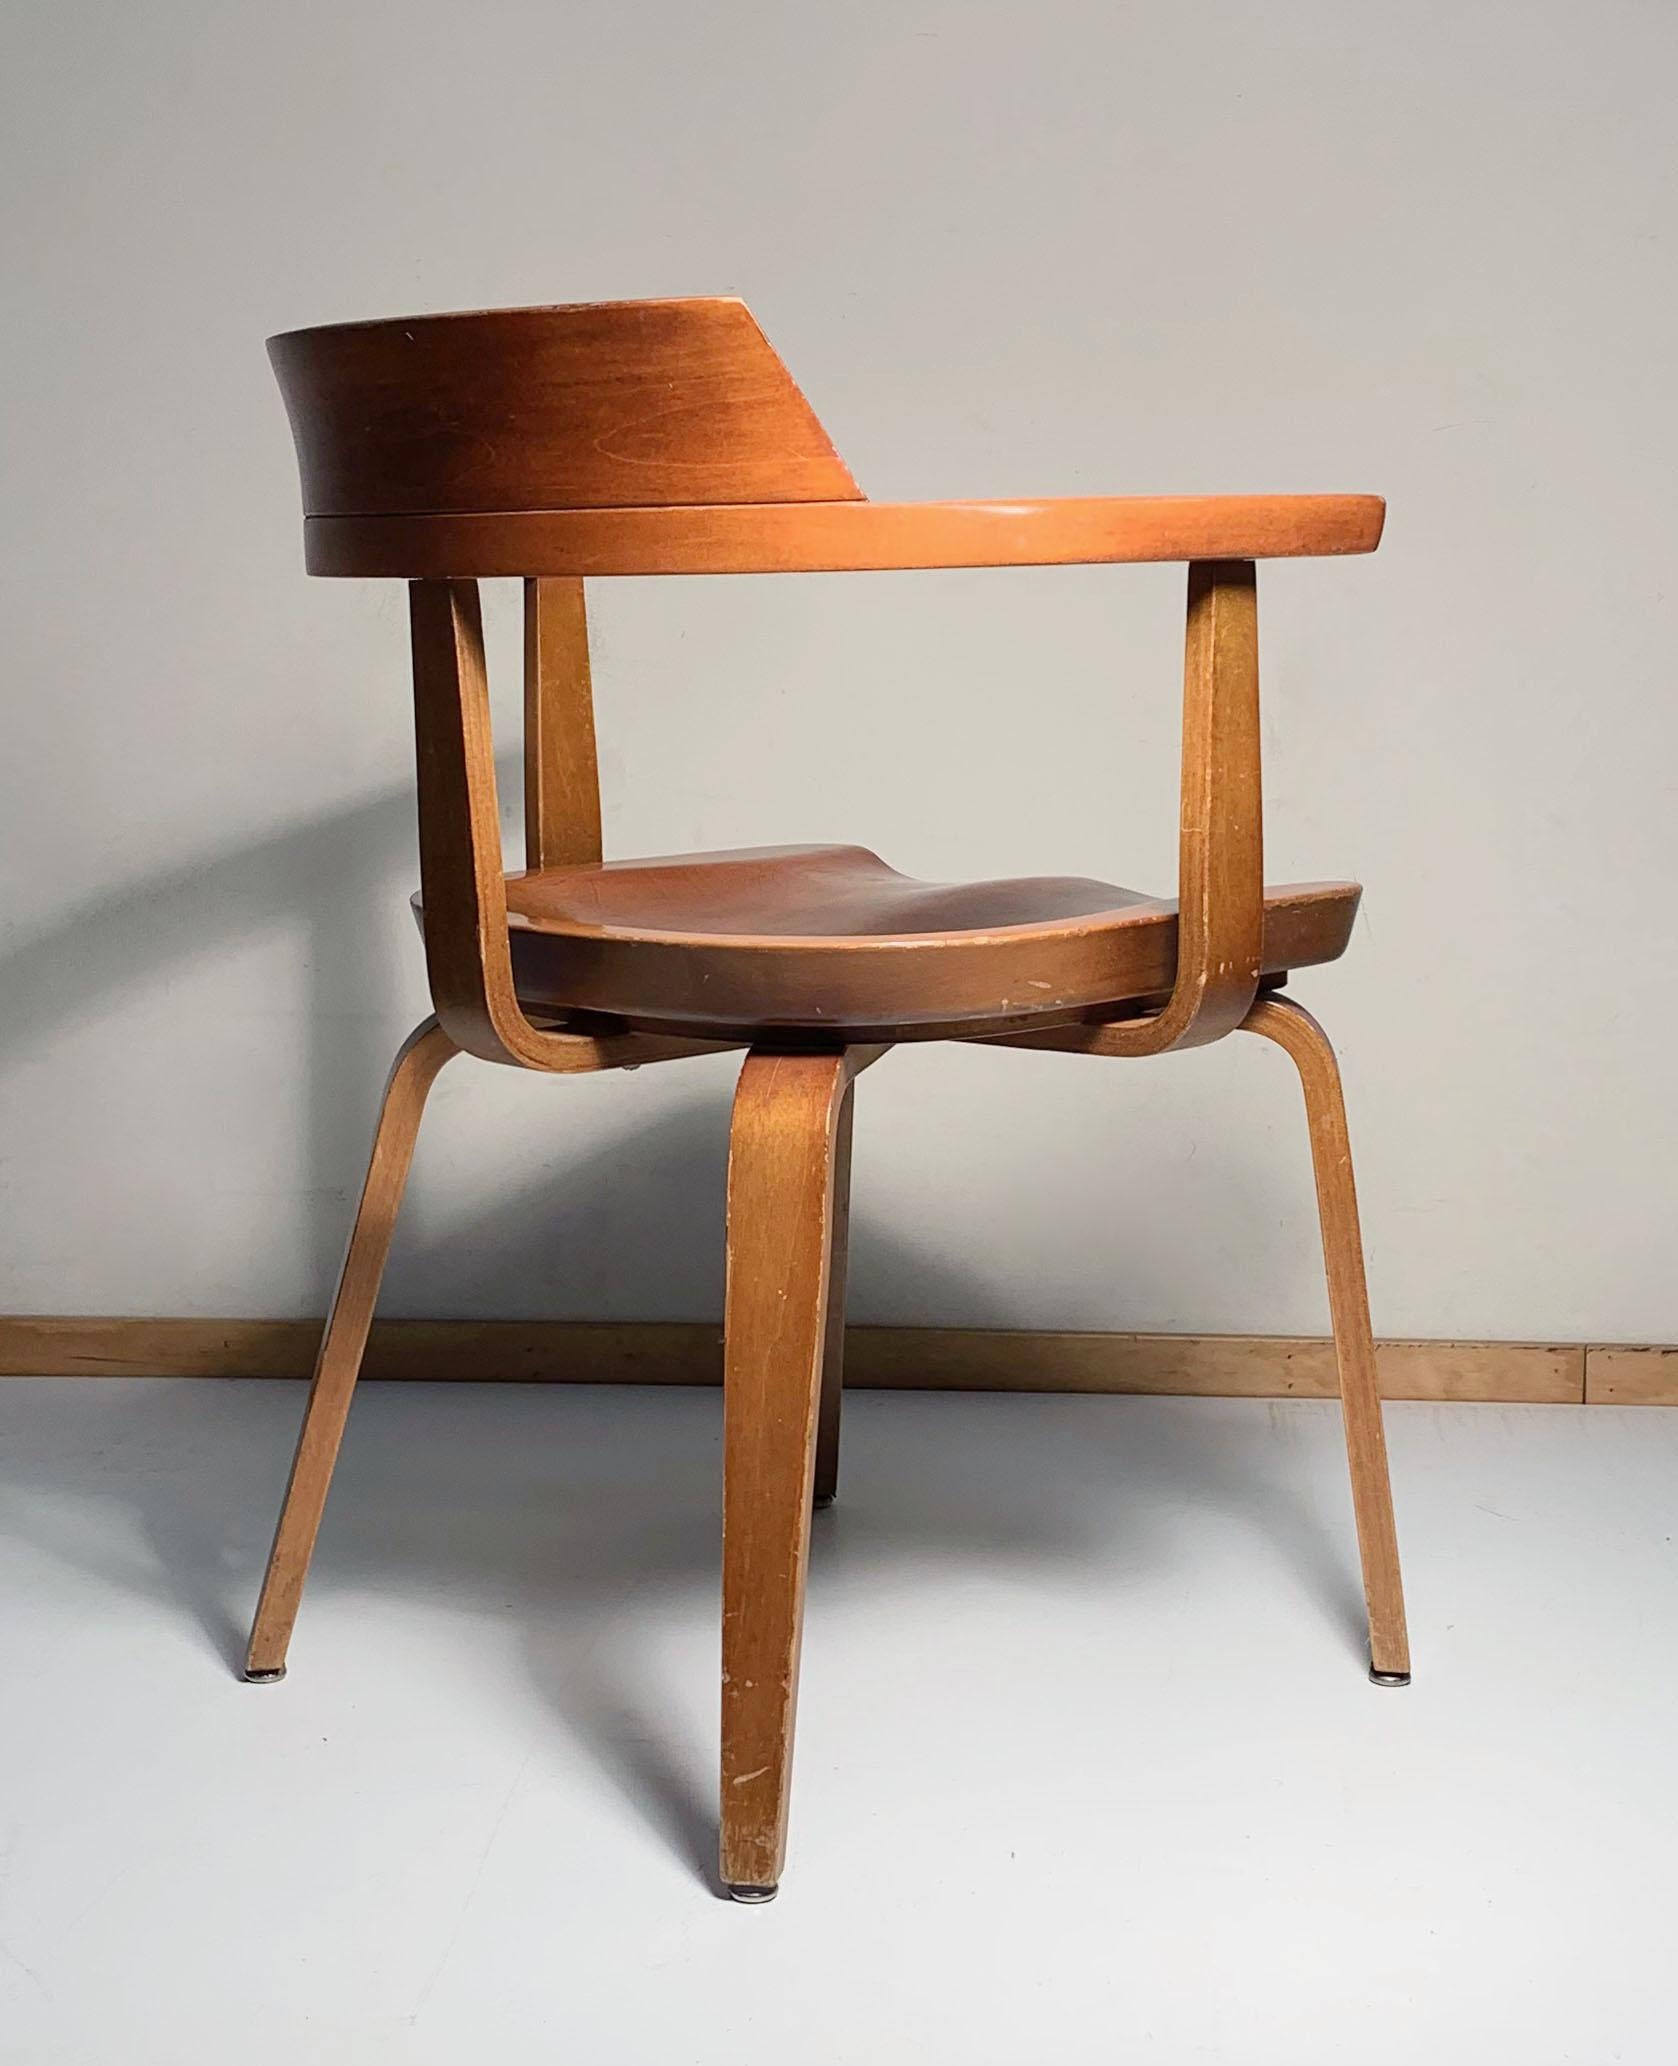 German Thonet Chair by Walter Gropius